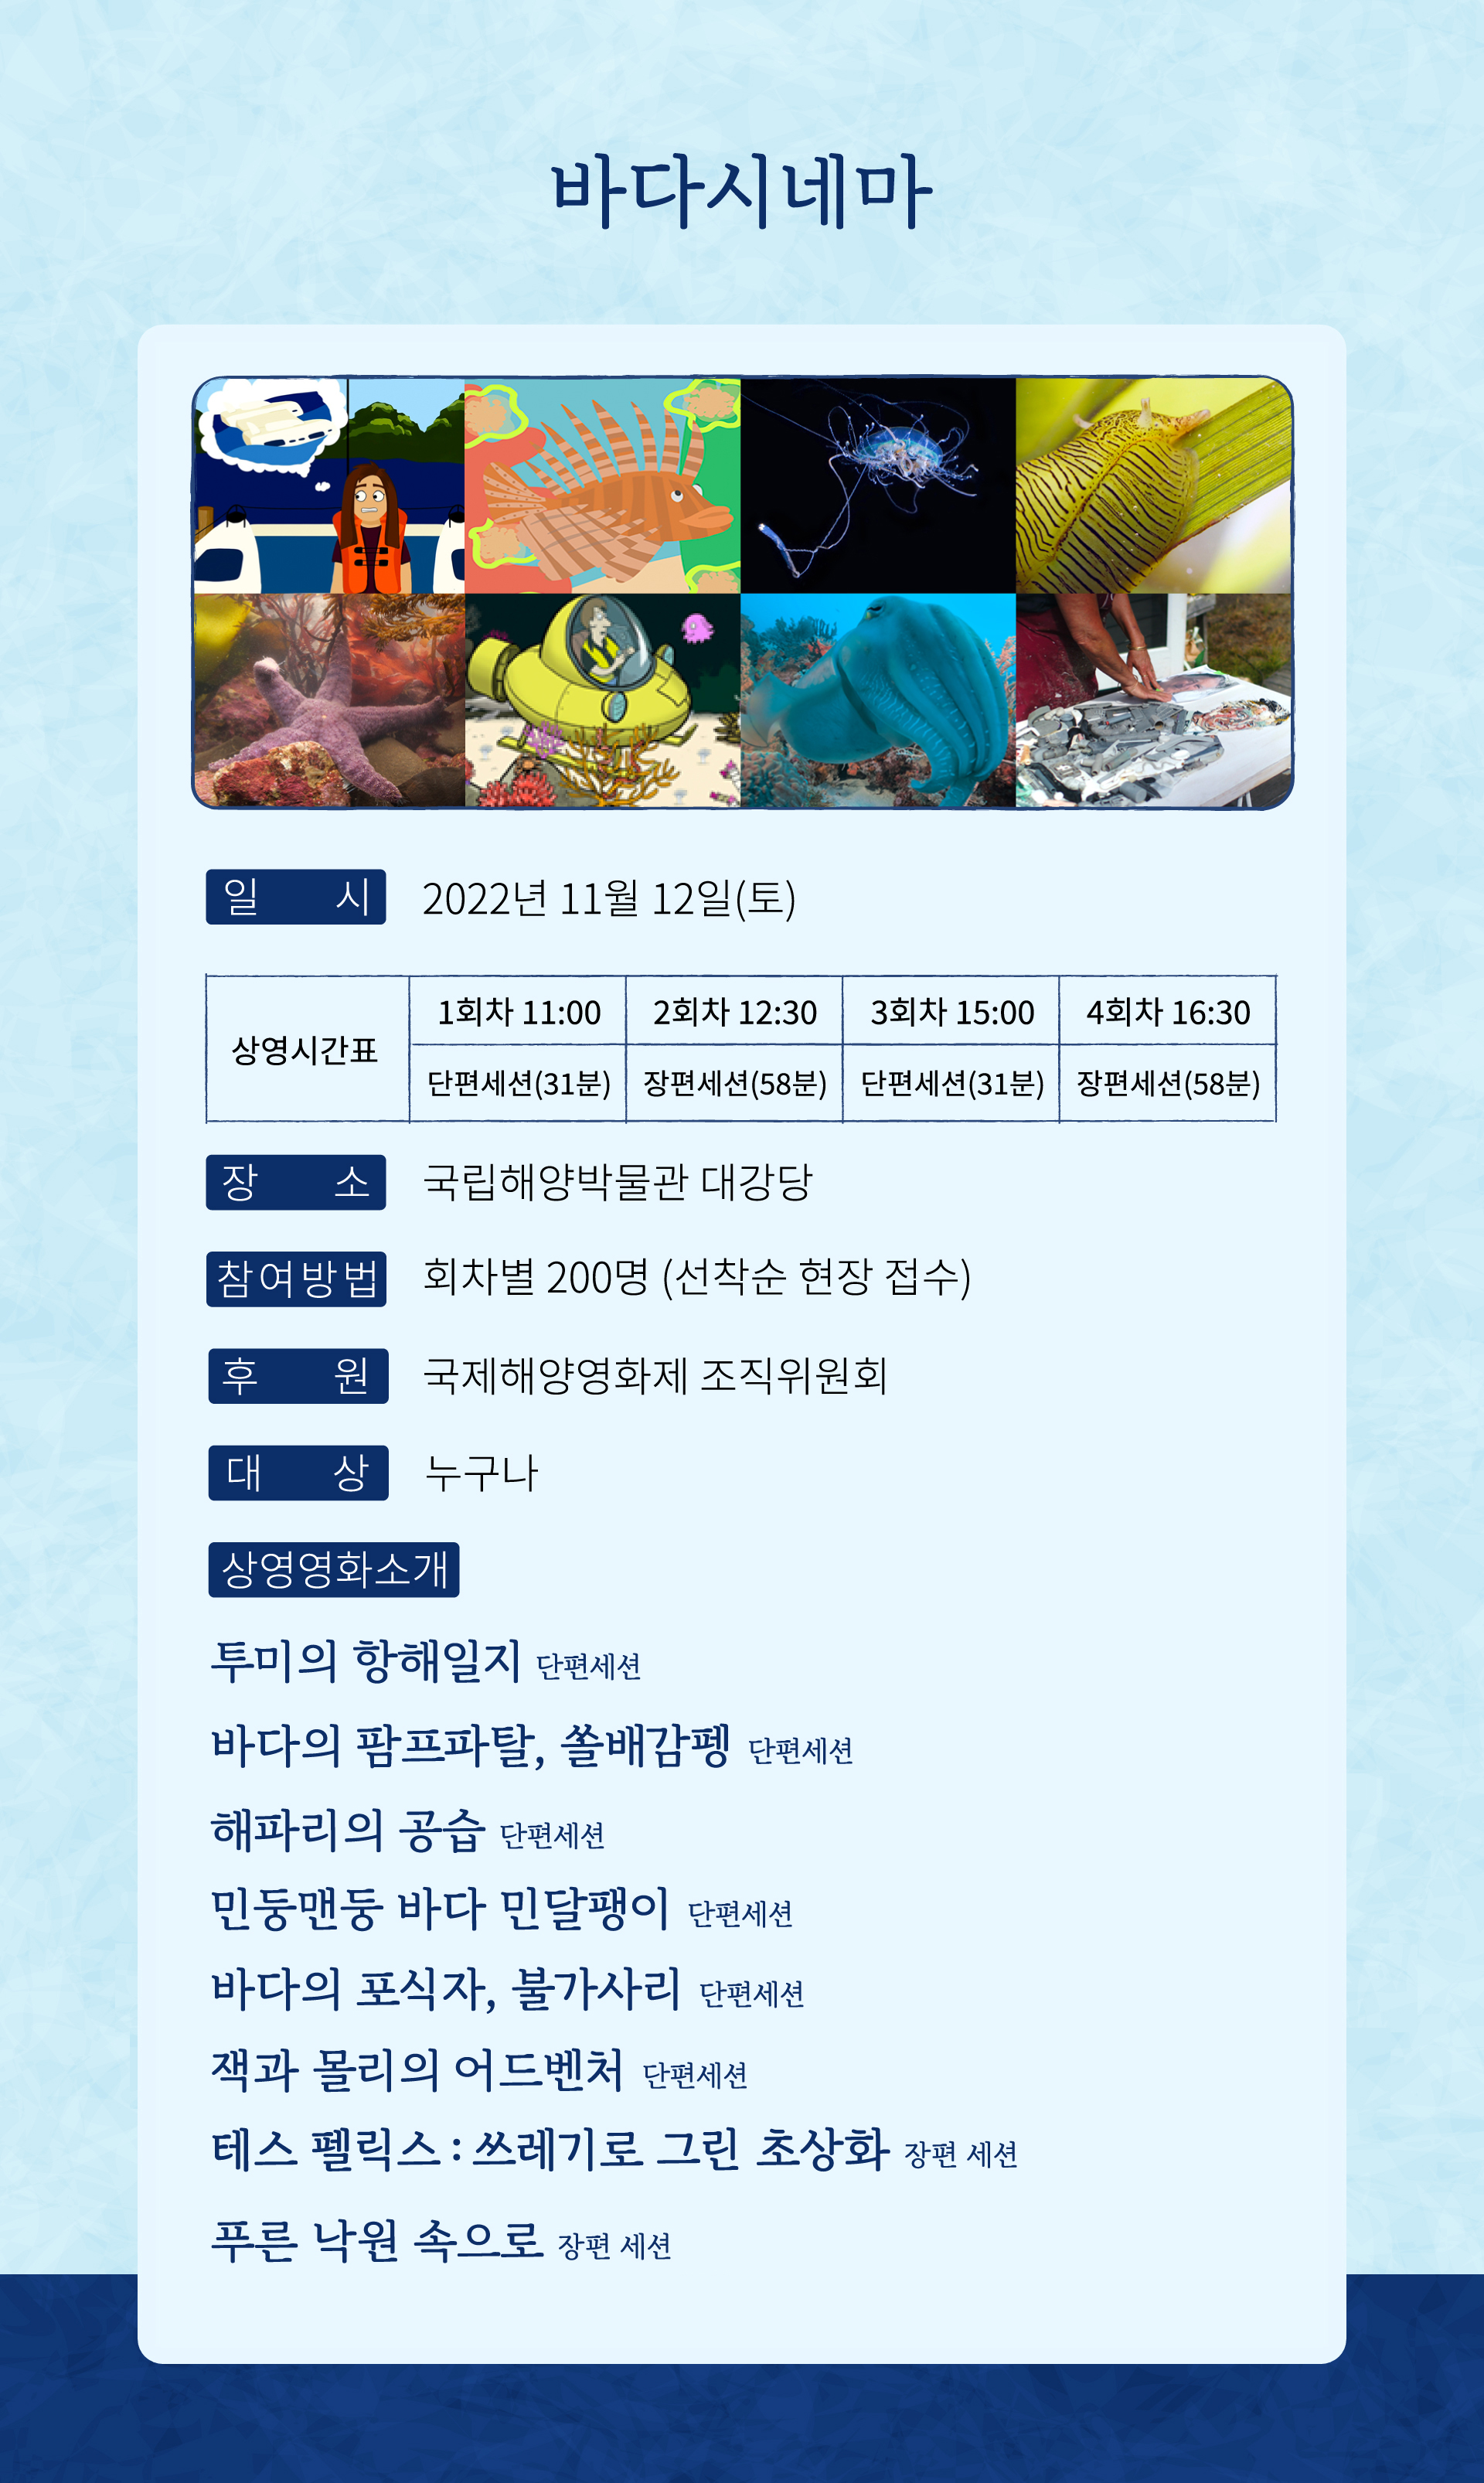 바다시네마 공연은 2022년 11월 12일 토요일 국립해양박물관 대강당에서 진행됩니다. 자세한 내용은 아래에 이어집니다.